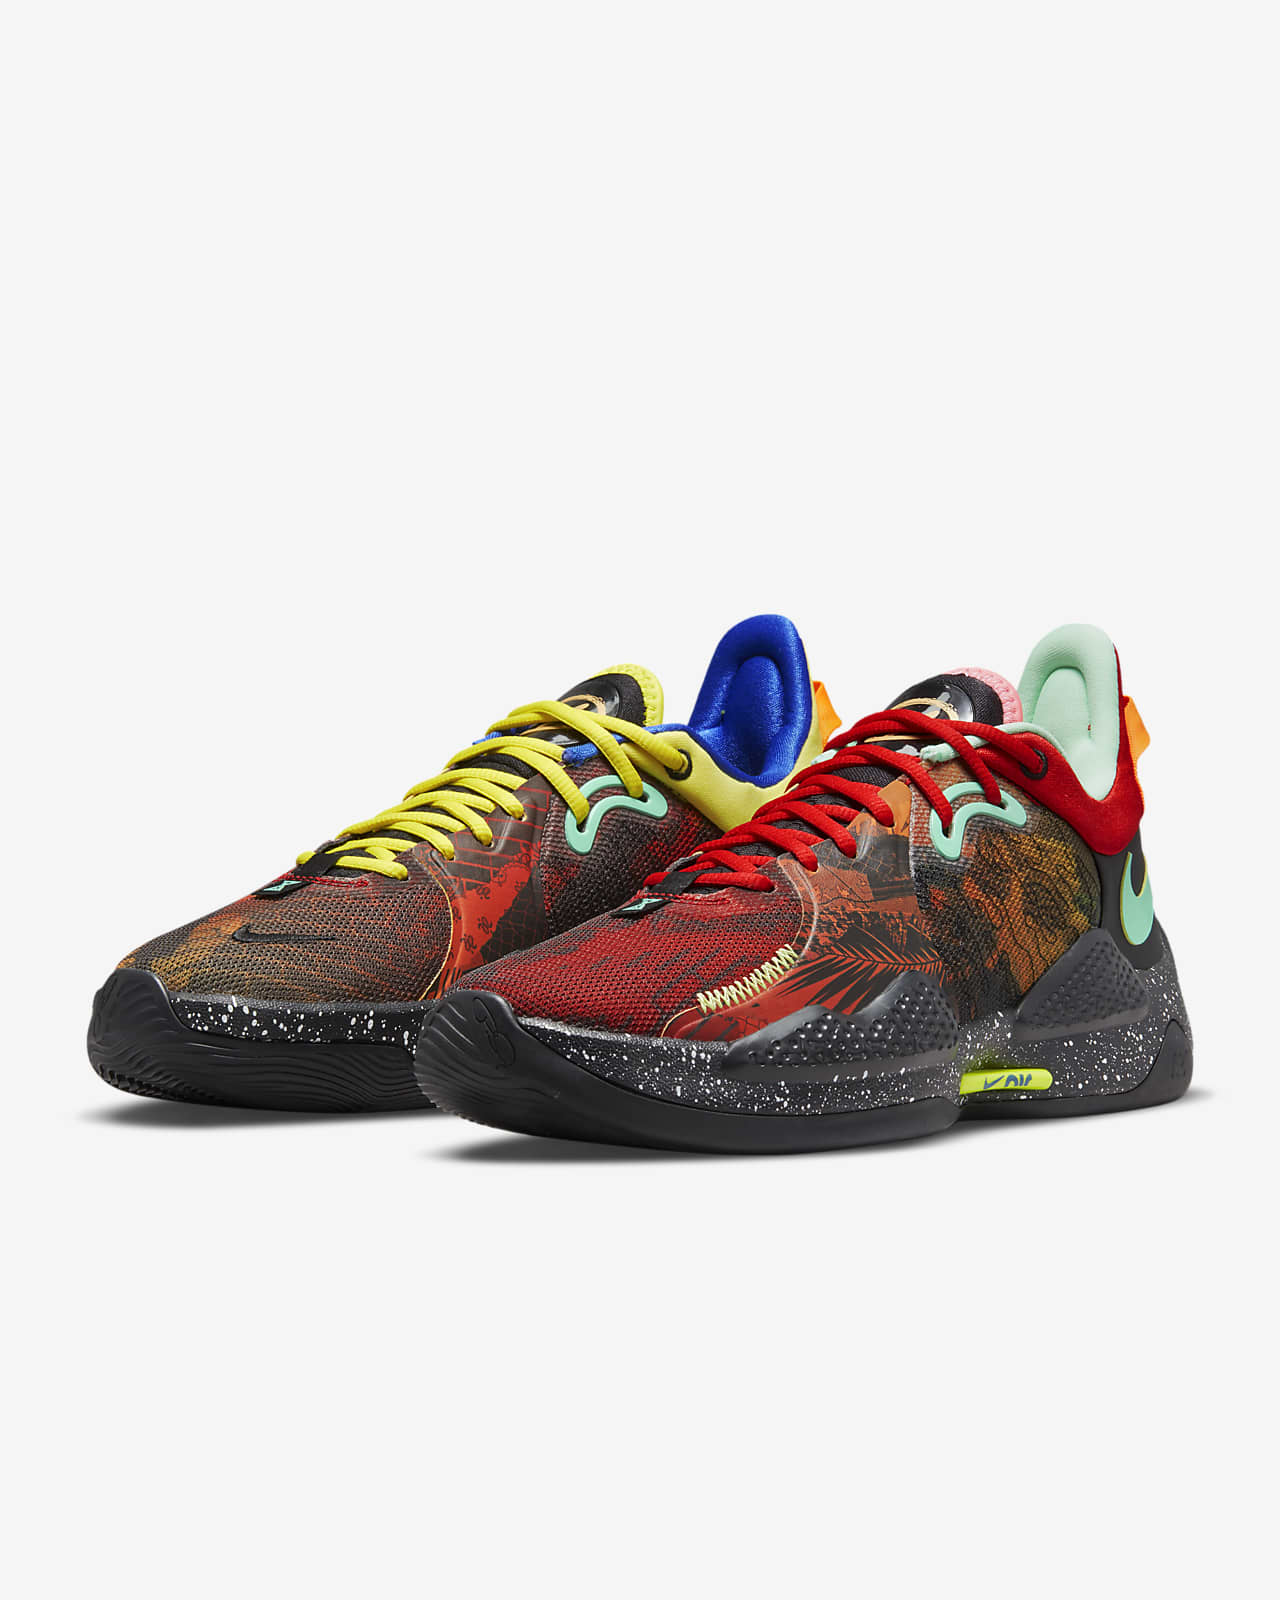 PG 5 EP Basketball Shoes. Nike ID